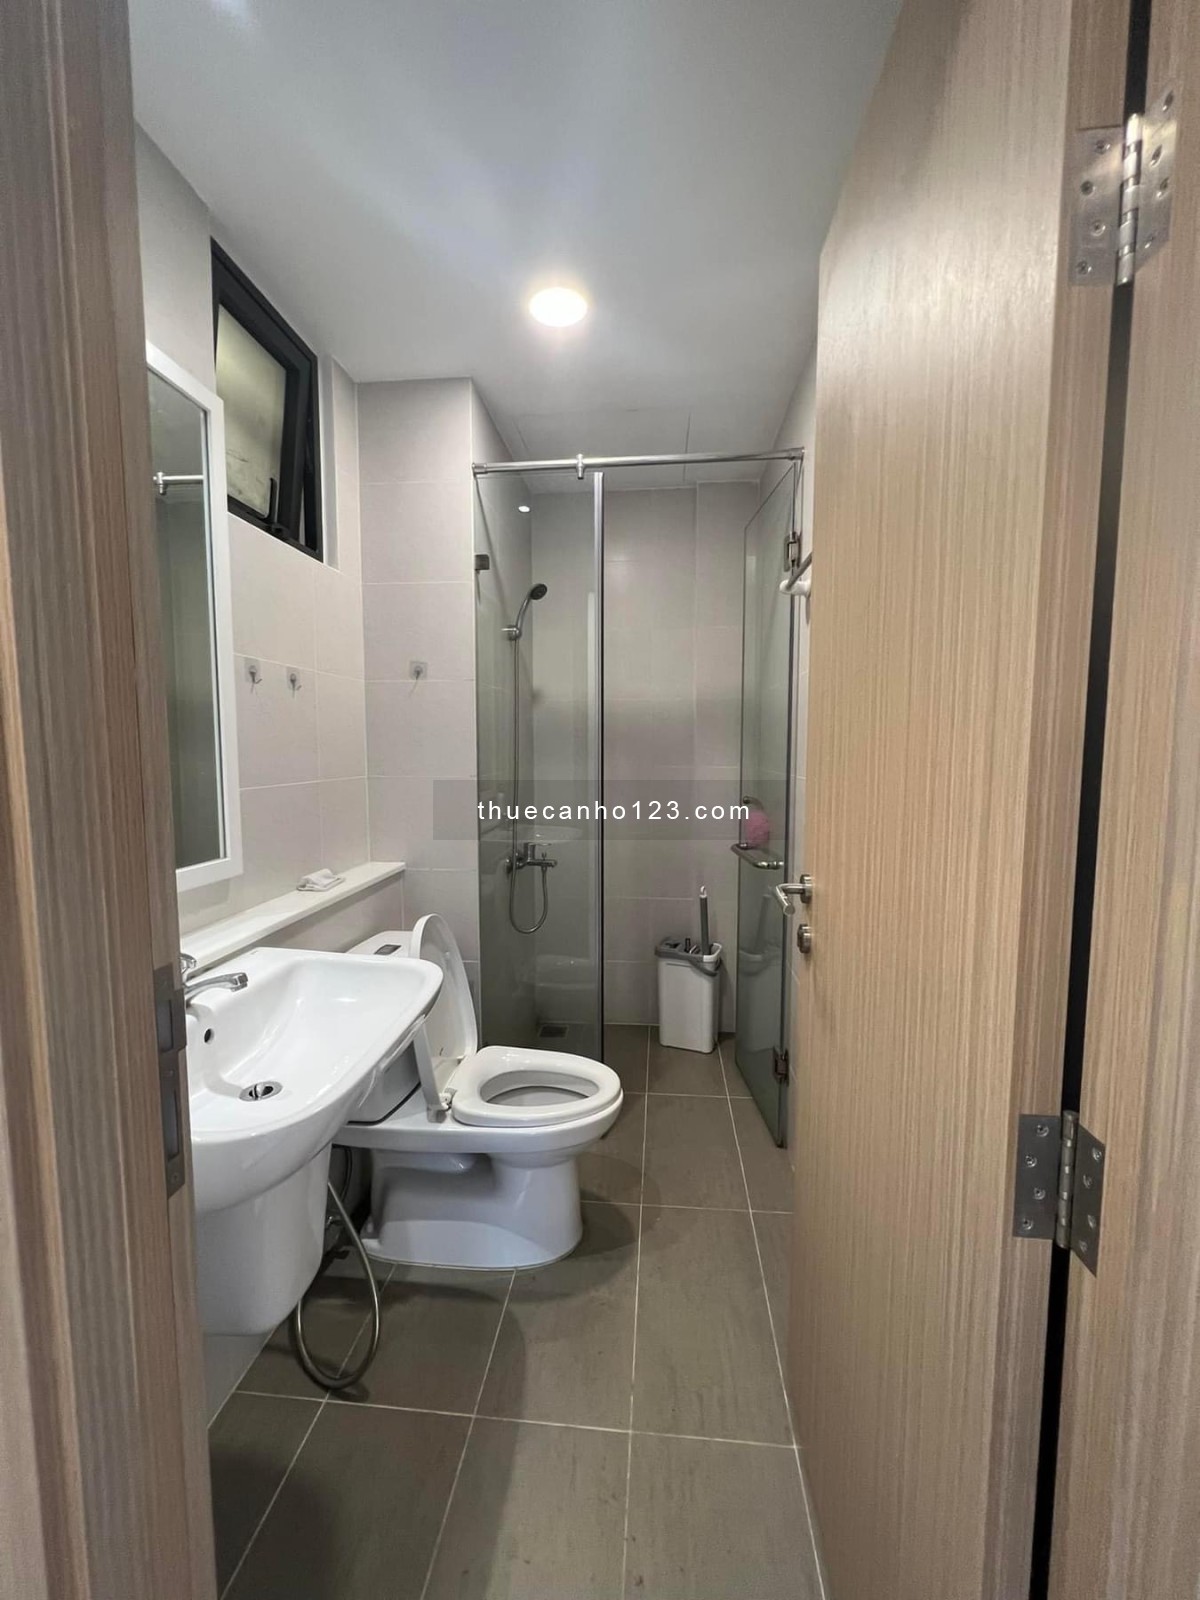 Cho thuê căn hộ Safira Khang Điền, 67m2 2PN - 2WC, nội thất như hình, giá chỉ 8tr5/tháng, vào ở ngay